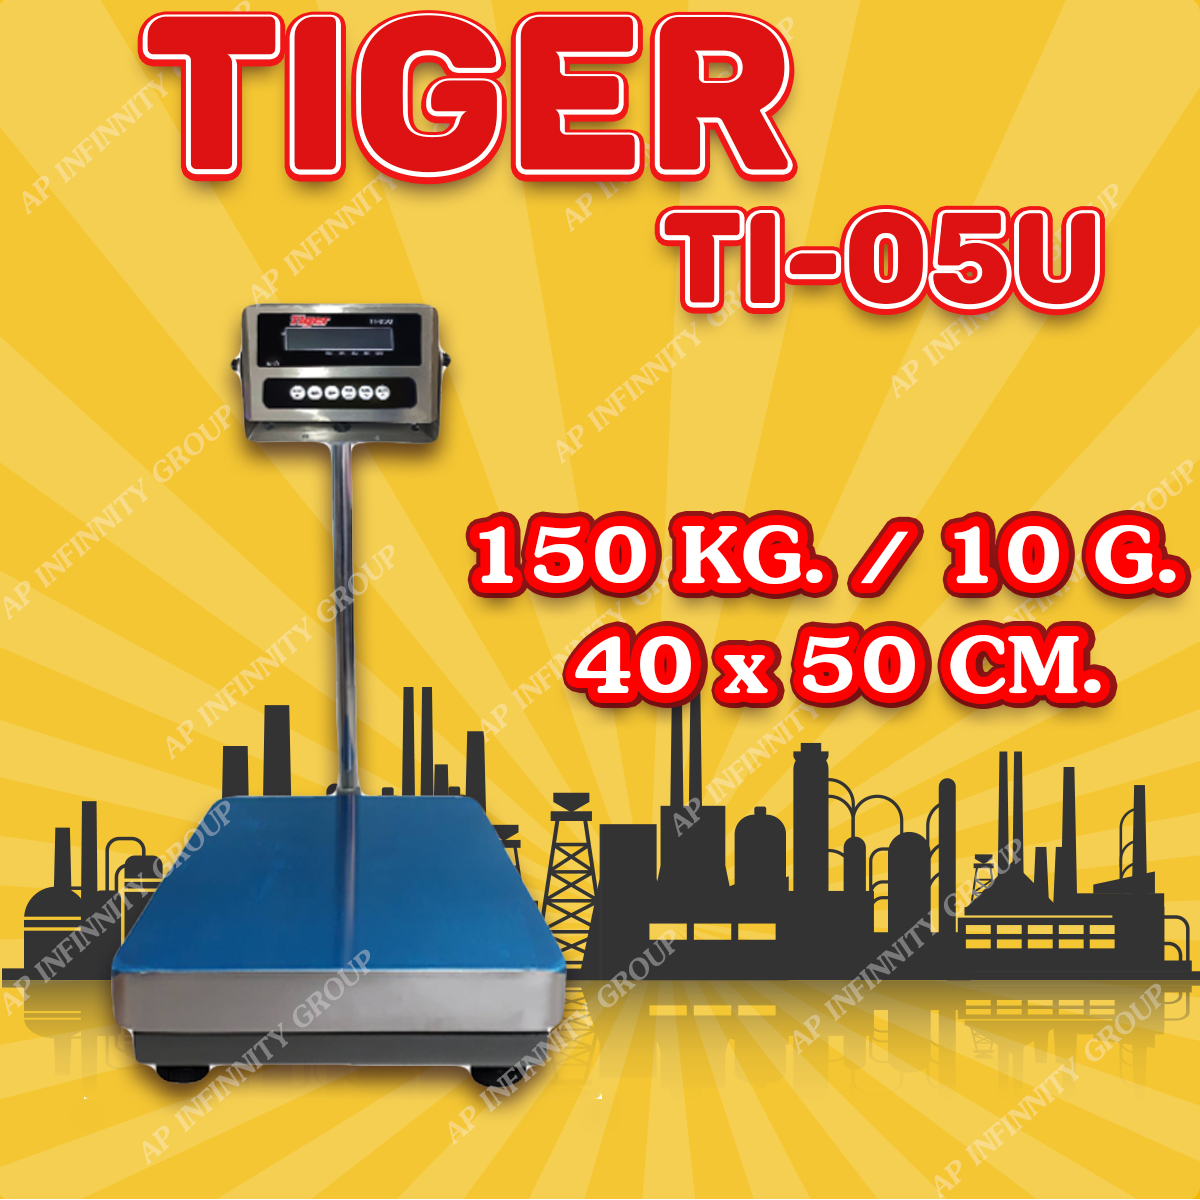 ตาชั่งดิจิตอล เครื่องชั่งดิจิตอล เครื่องชั่งตั้งพื้น 150kg ความละเอียด 10g ยี่ห้อ Tiger รุ่น TI–05U แท่นชั่งขนาดฐาน 40x 50cm มีช่อง USB สำหรับการบันทึกข้อมูลได้ รูปที่ 1